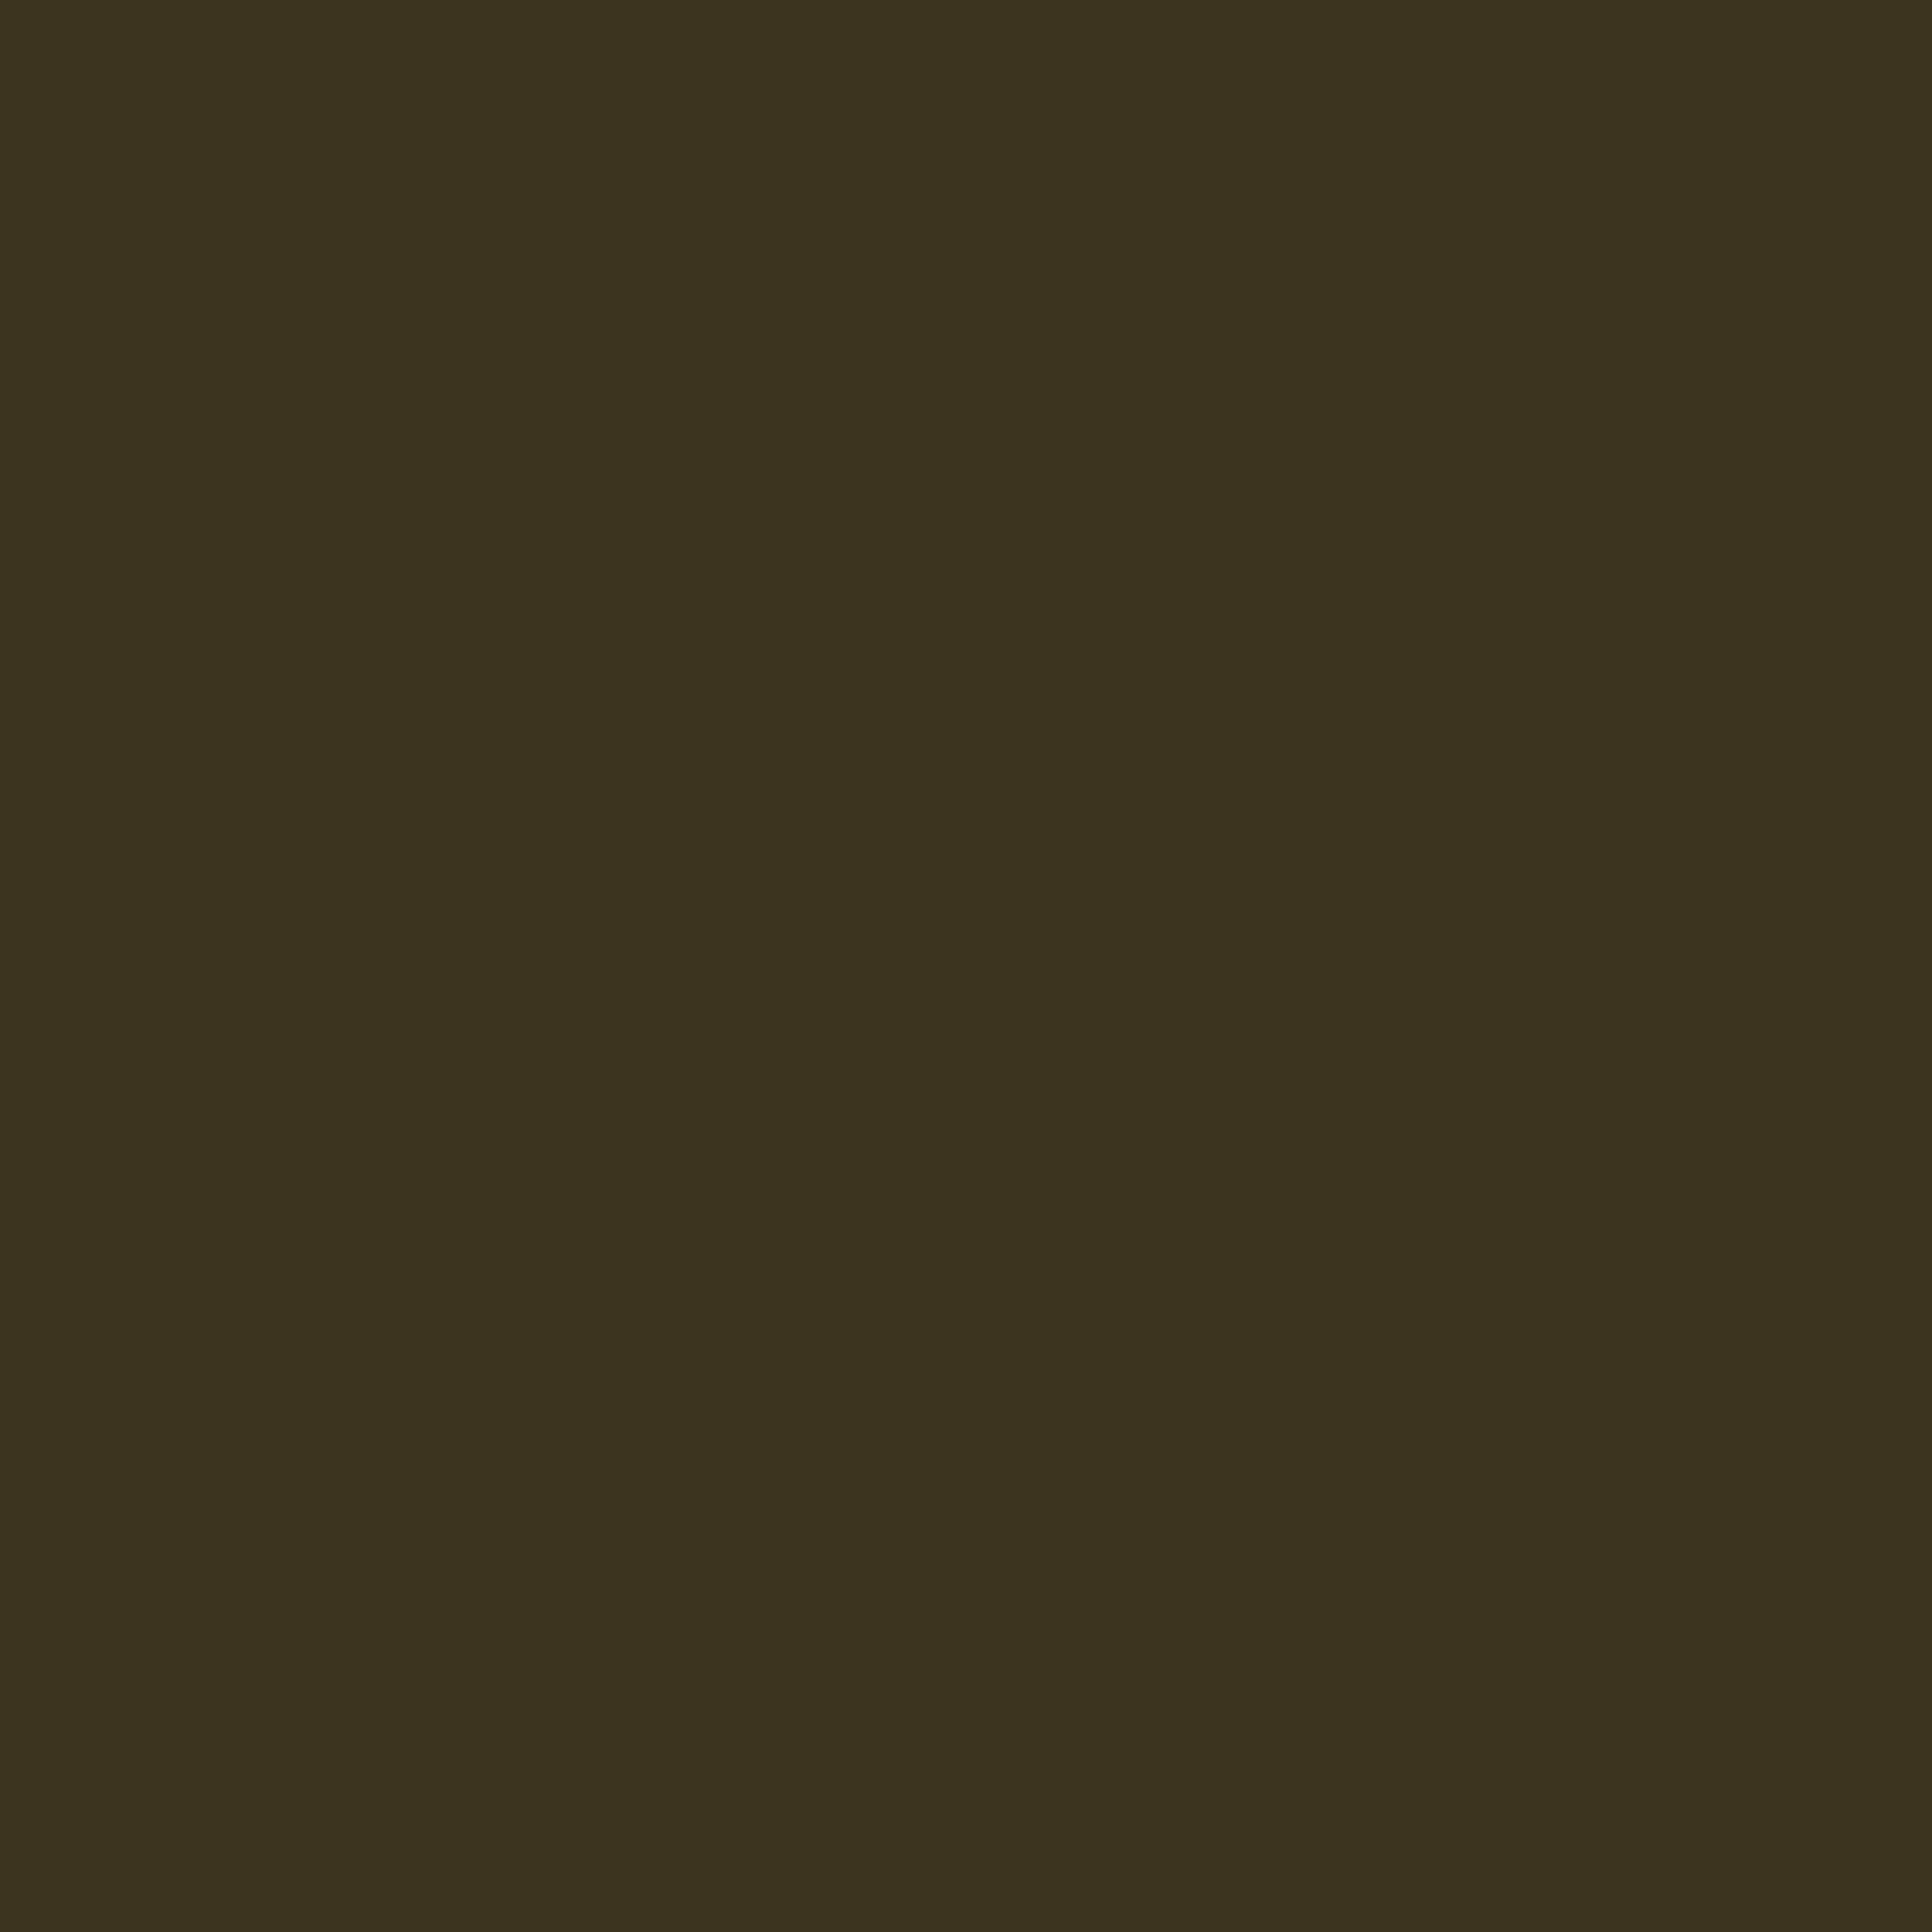 2732x2732 Olive Drab Number Seven Solid Color Background